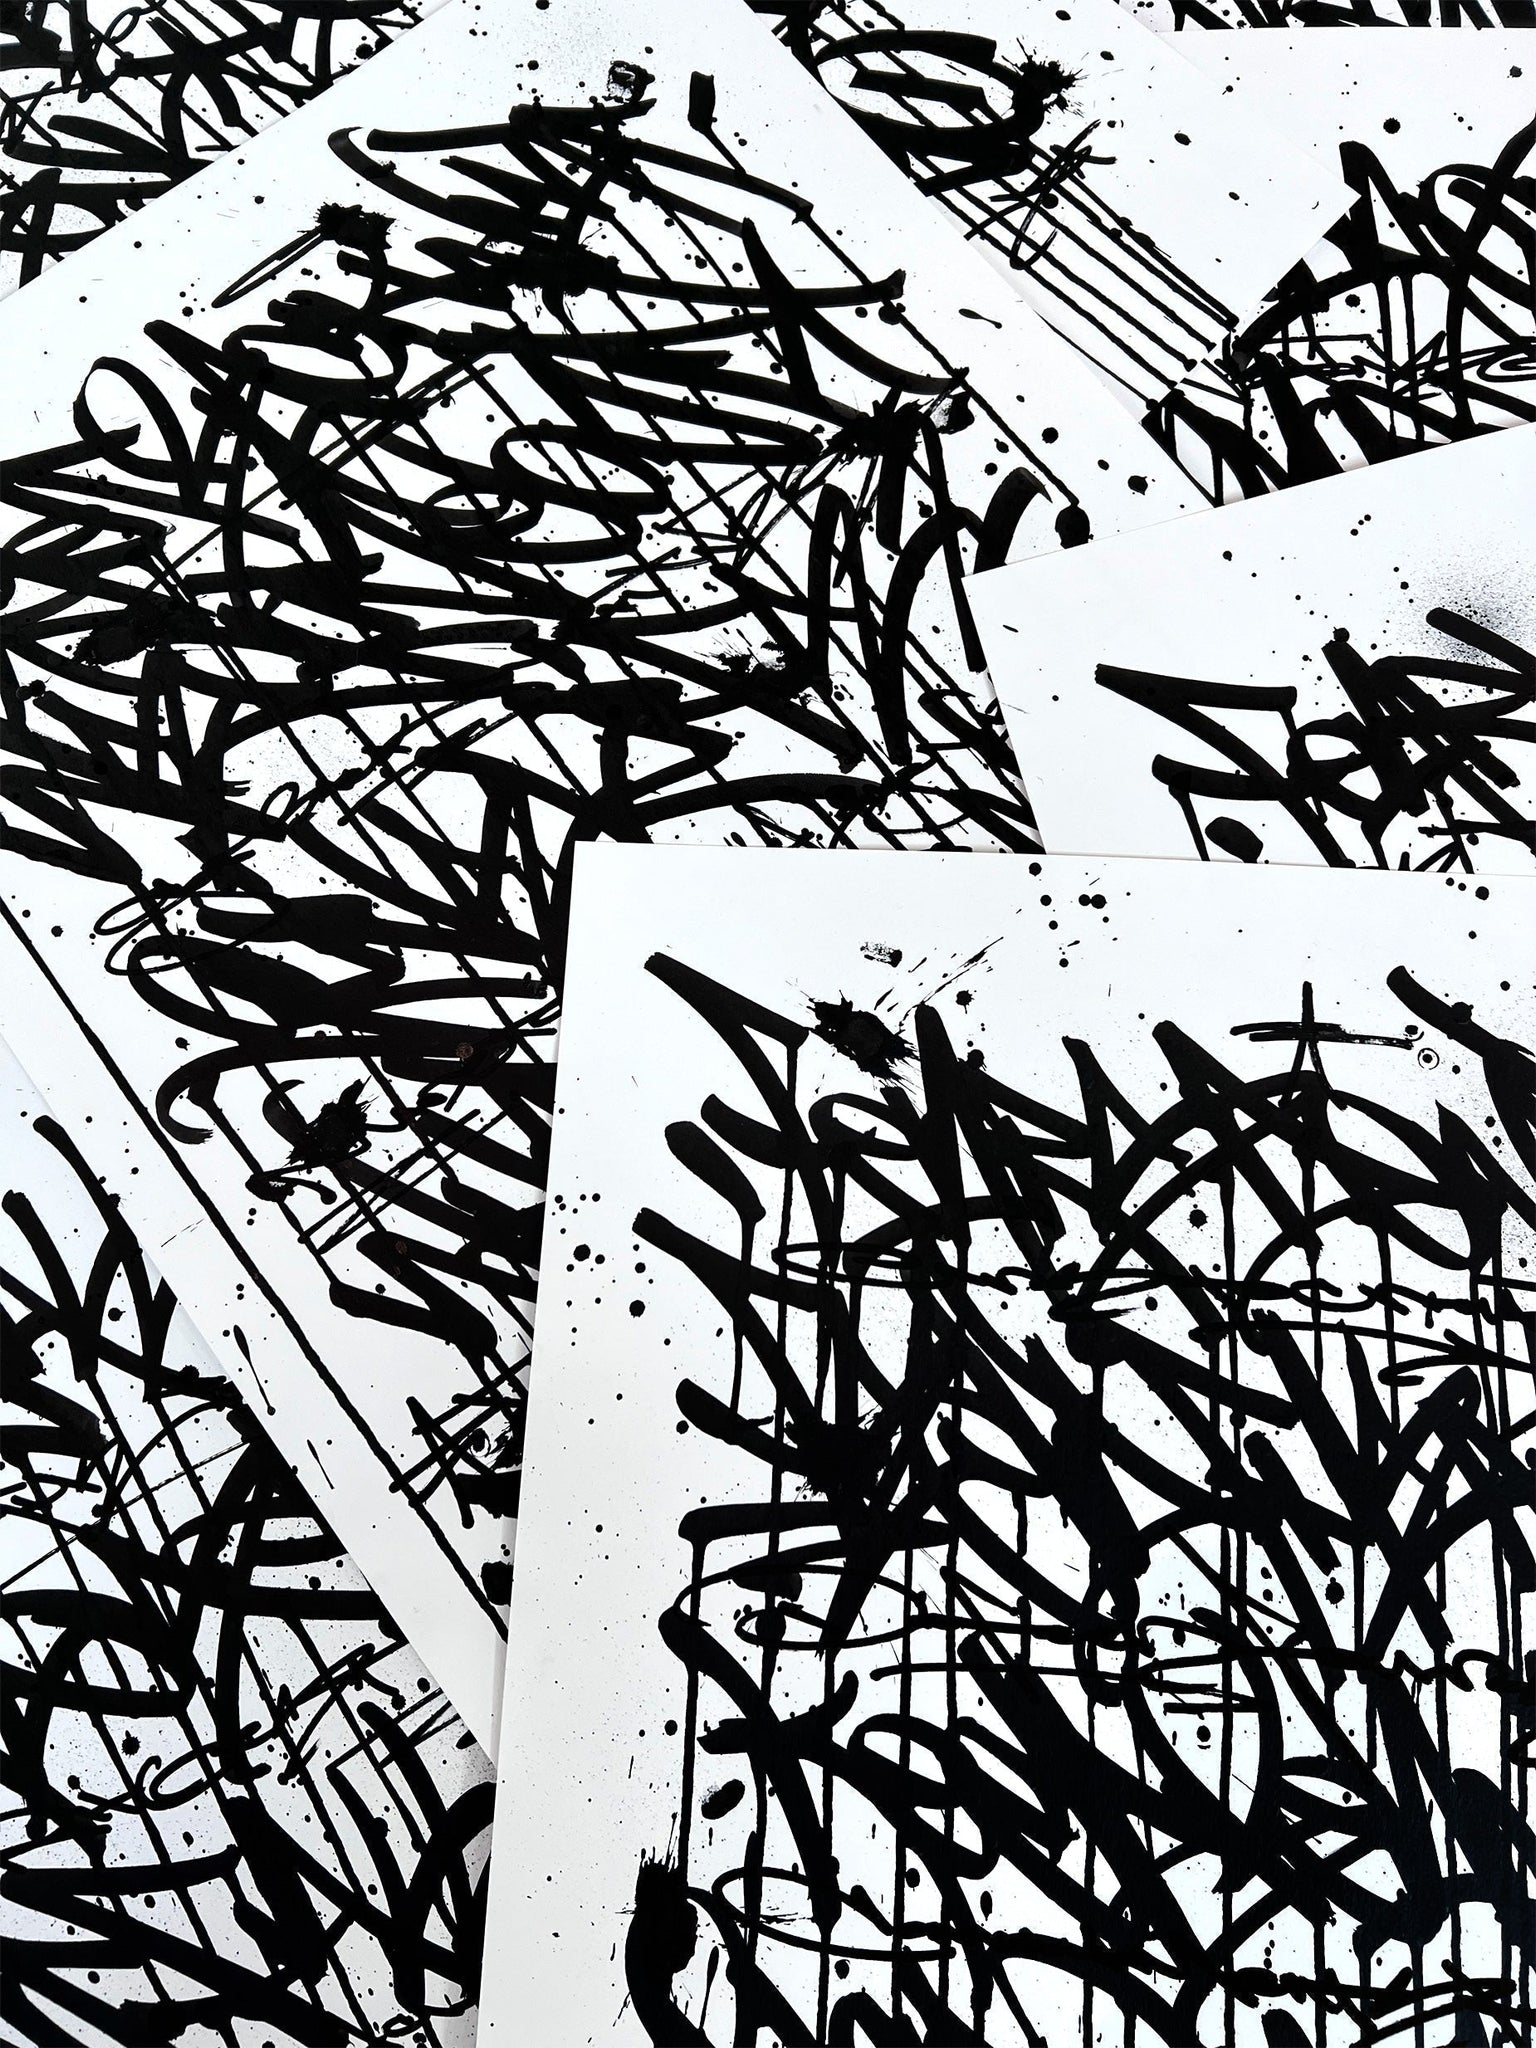 Fear Less Live More - original on paper 50 x 70 cm